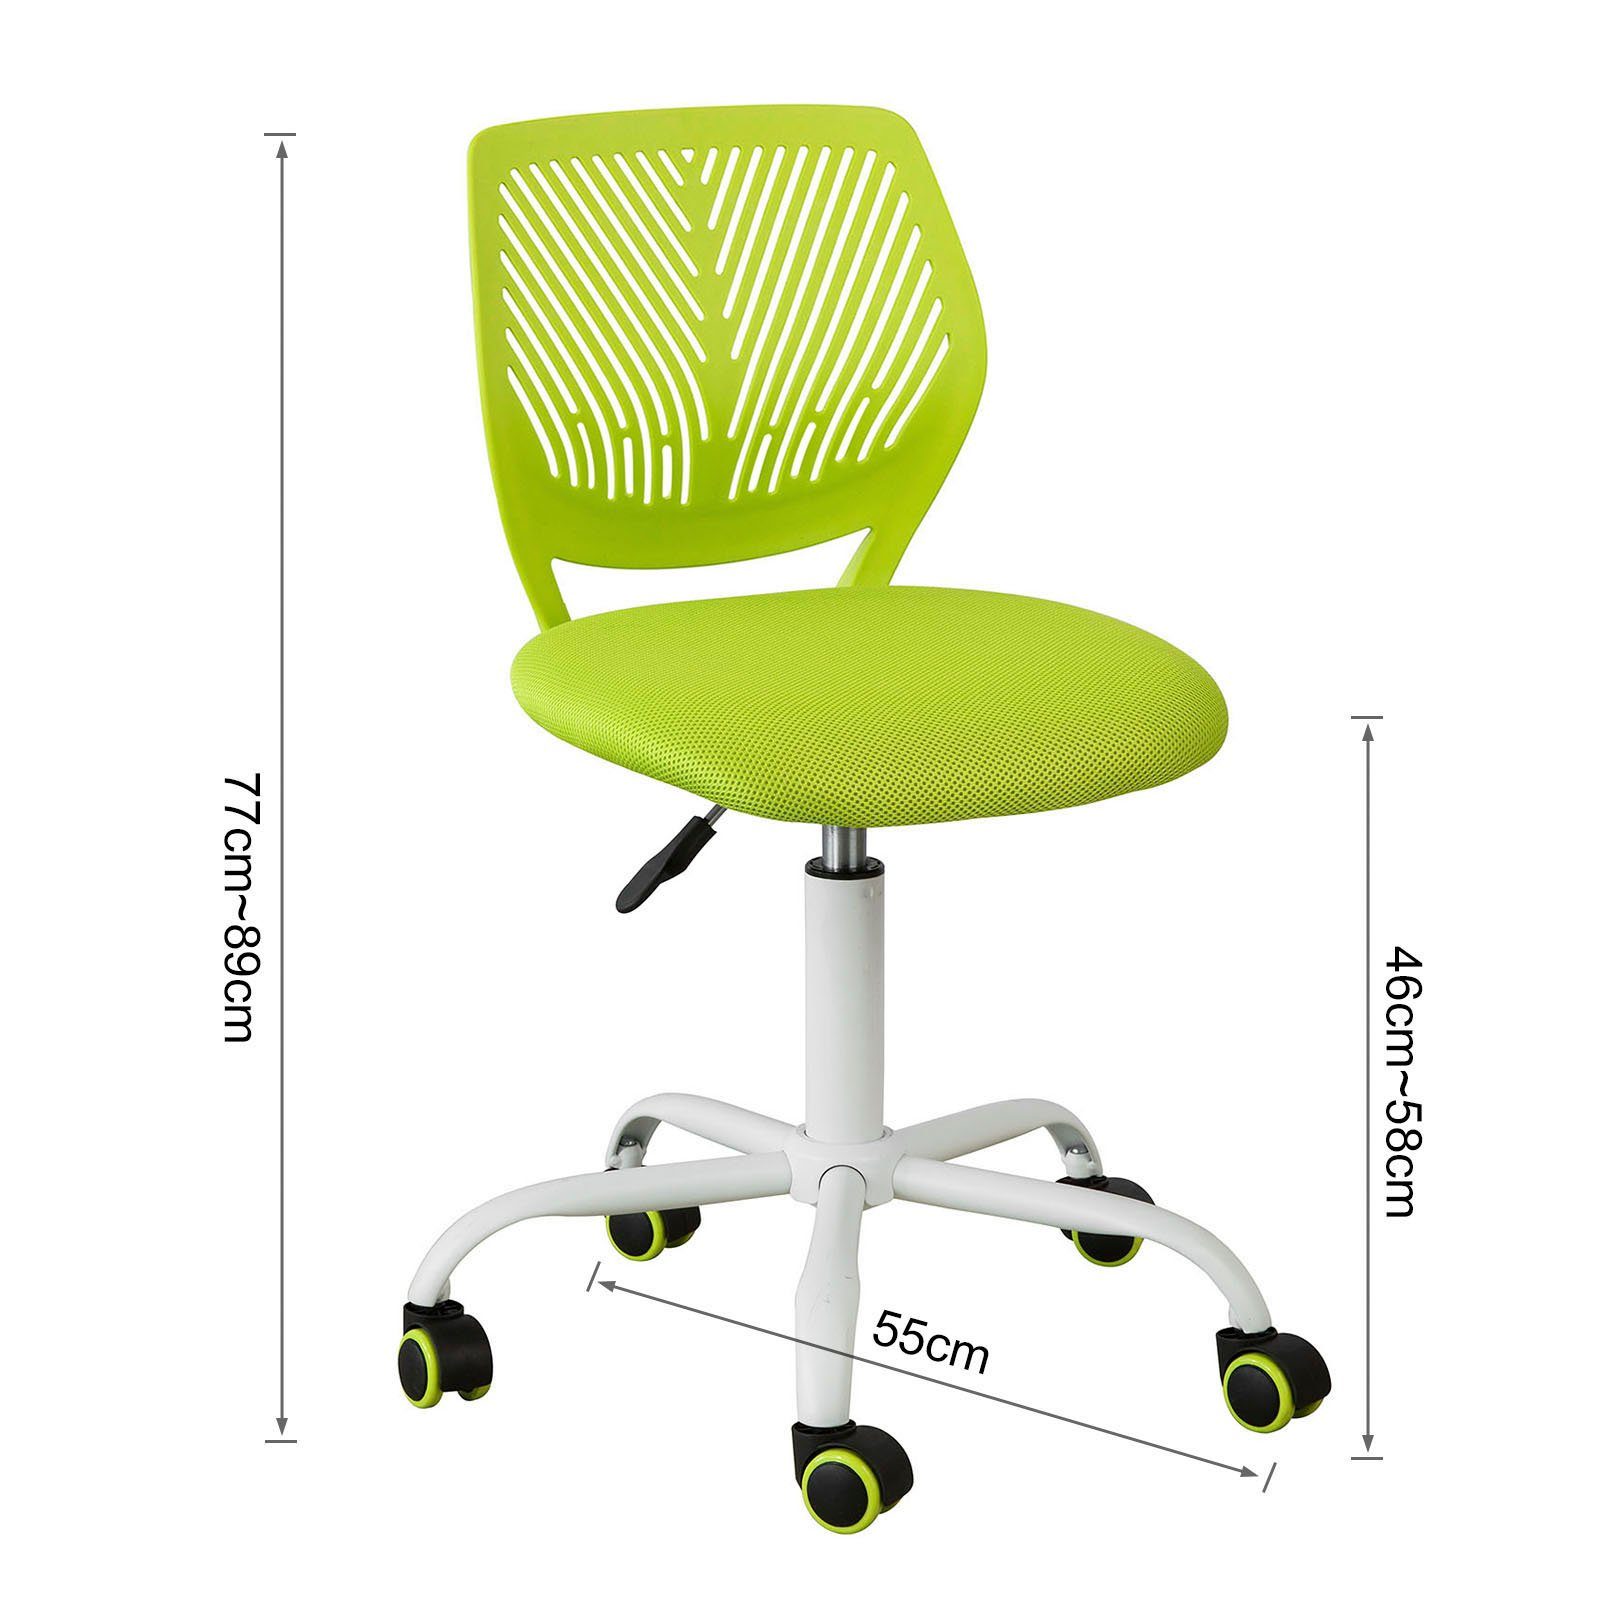 SoBuy höhenverstellbar Rücklehne Bürostuhl grün FST64, Schreibtischstuhl Drehstuhl mit Jugenddrehstuhl